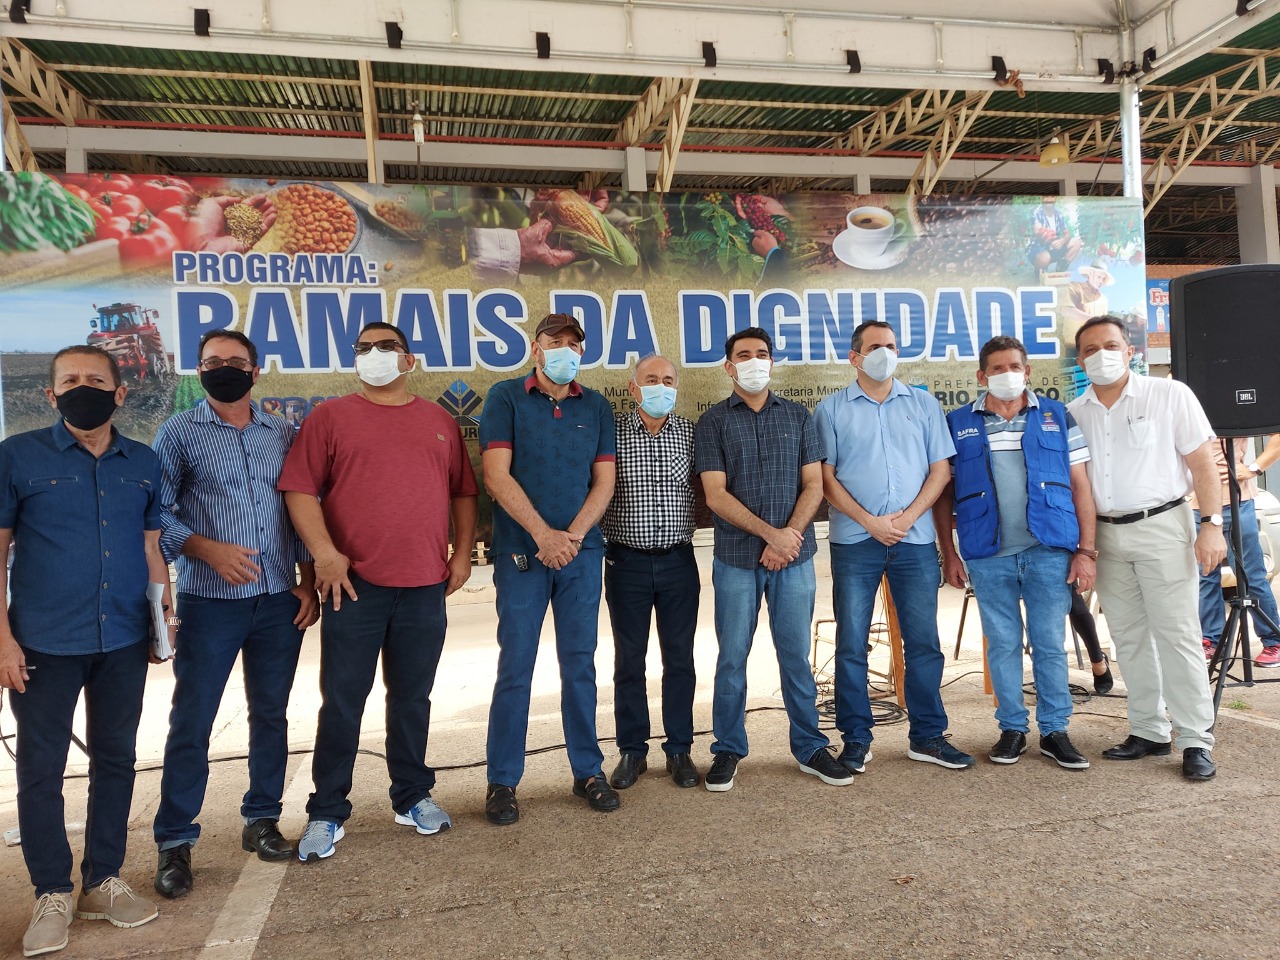 Vereadores de Rio Branco prestigiam lançamento do programa da prefeitura “Ramais da Dignidade”